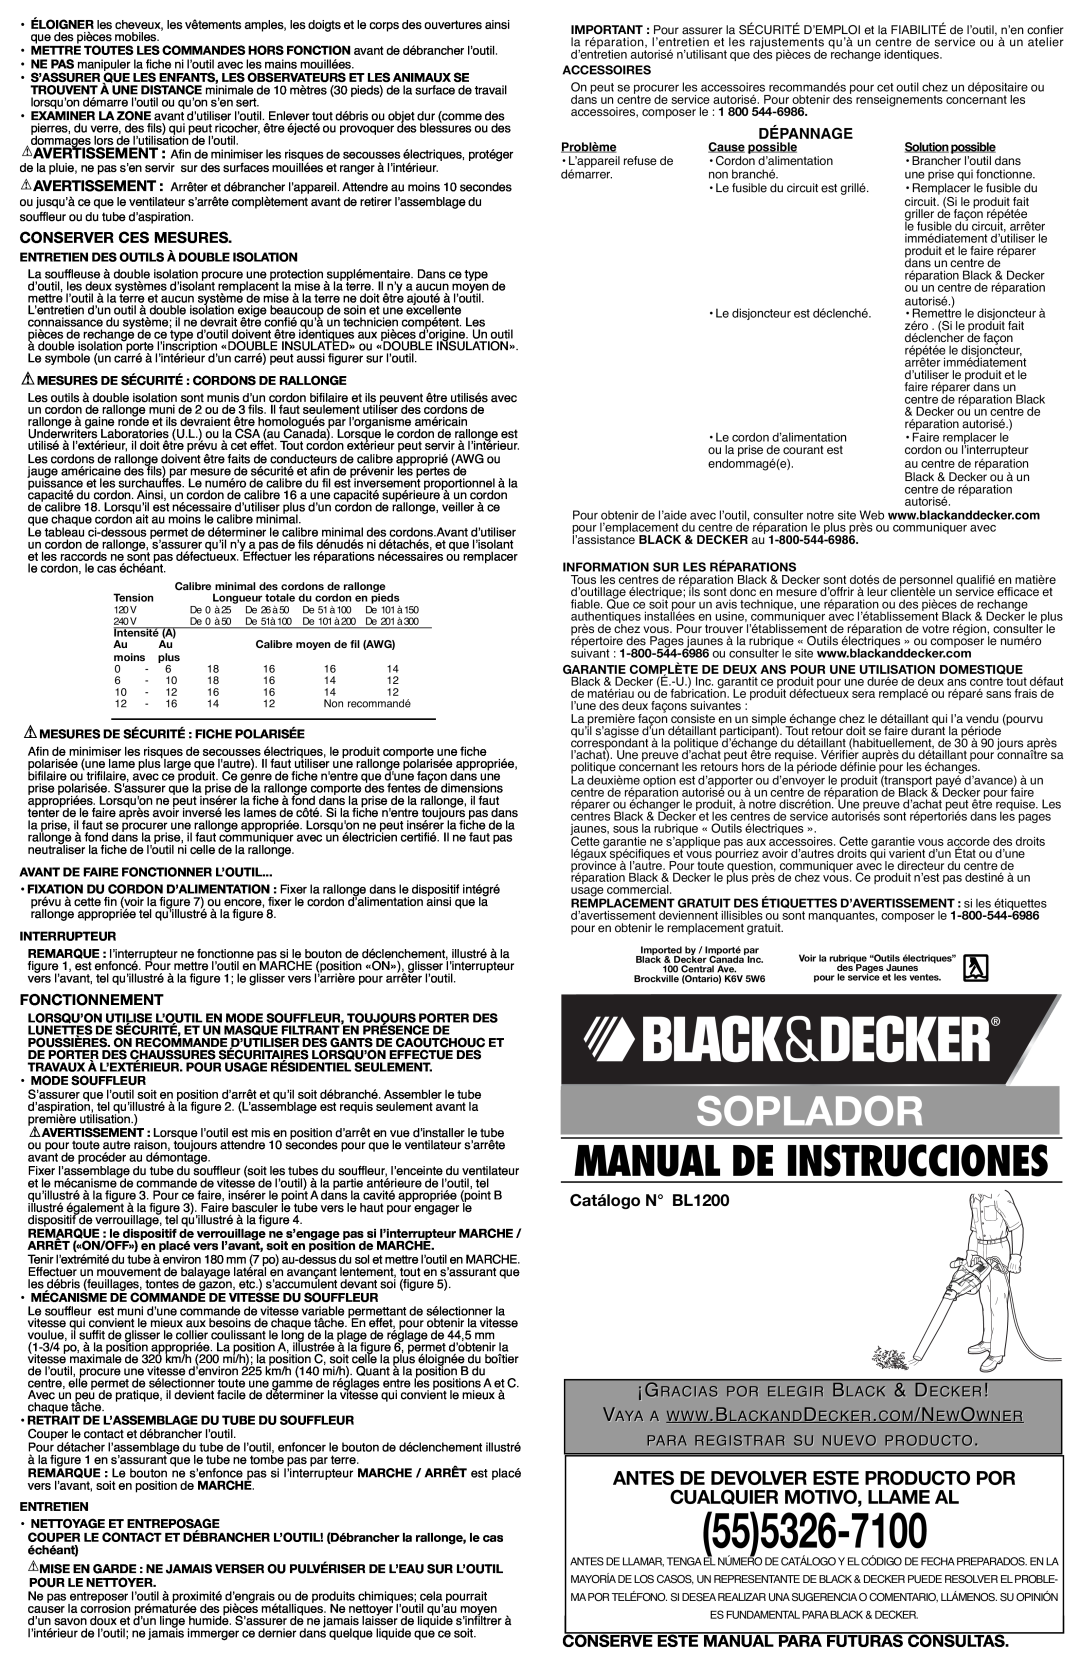 Black & Decker 90510657 Soplador, Antes De Devolver Este Producto Por Cualquier Motivo, Llame Al, Catálogo N BL1200 